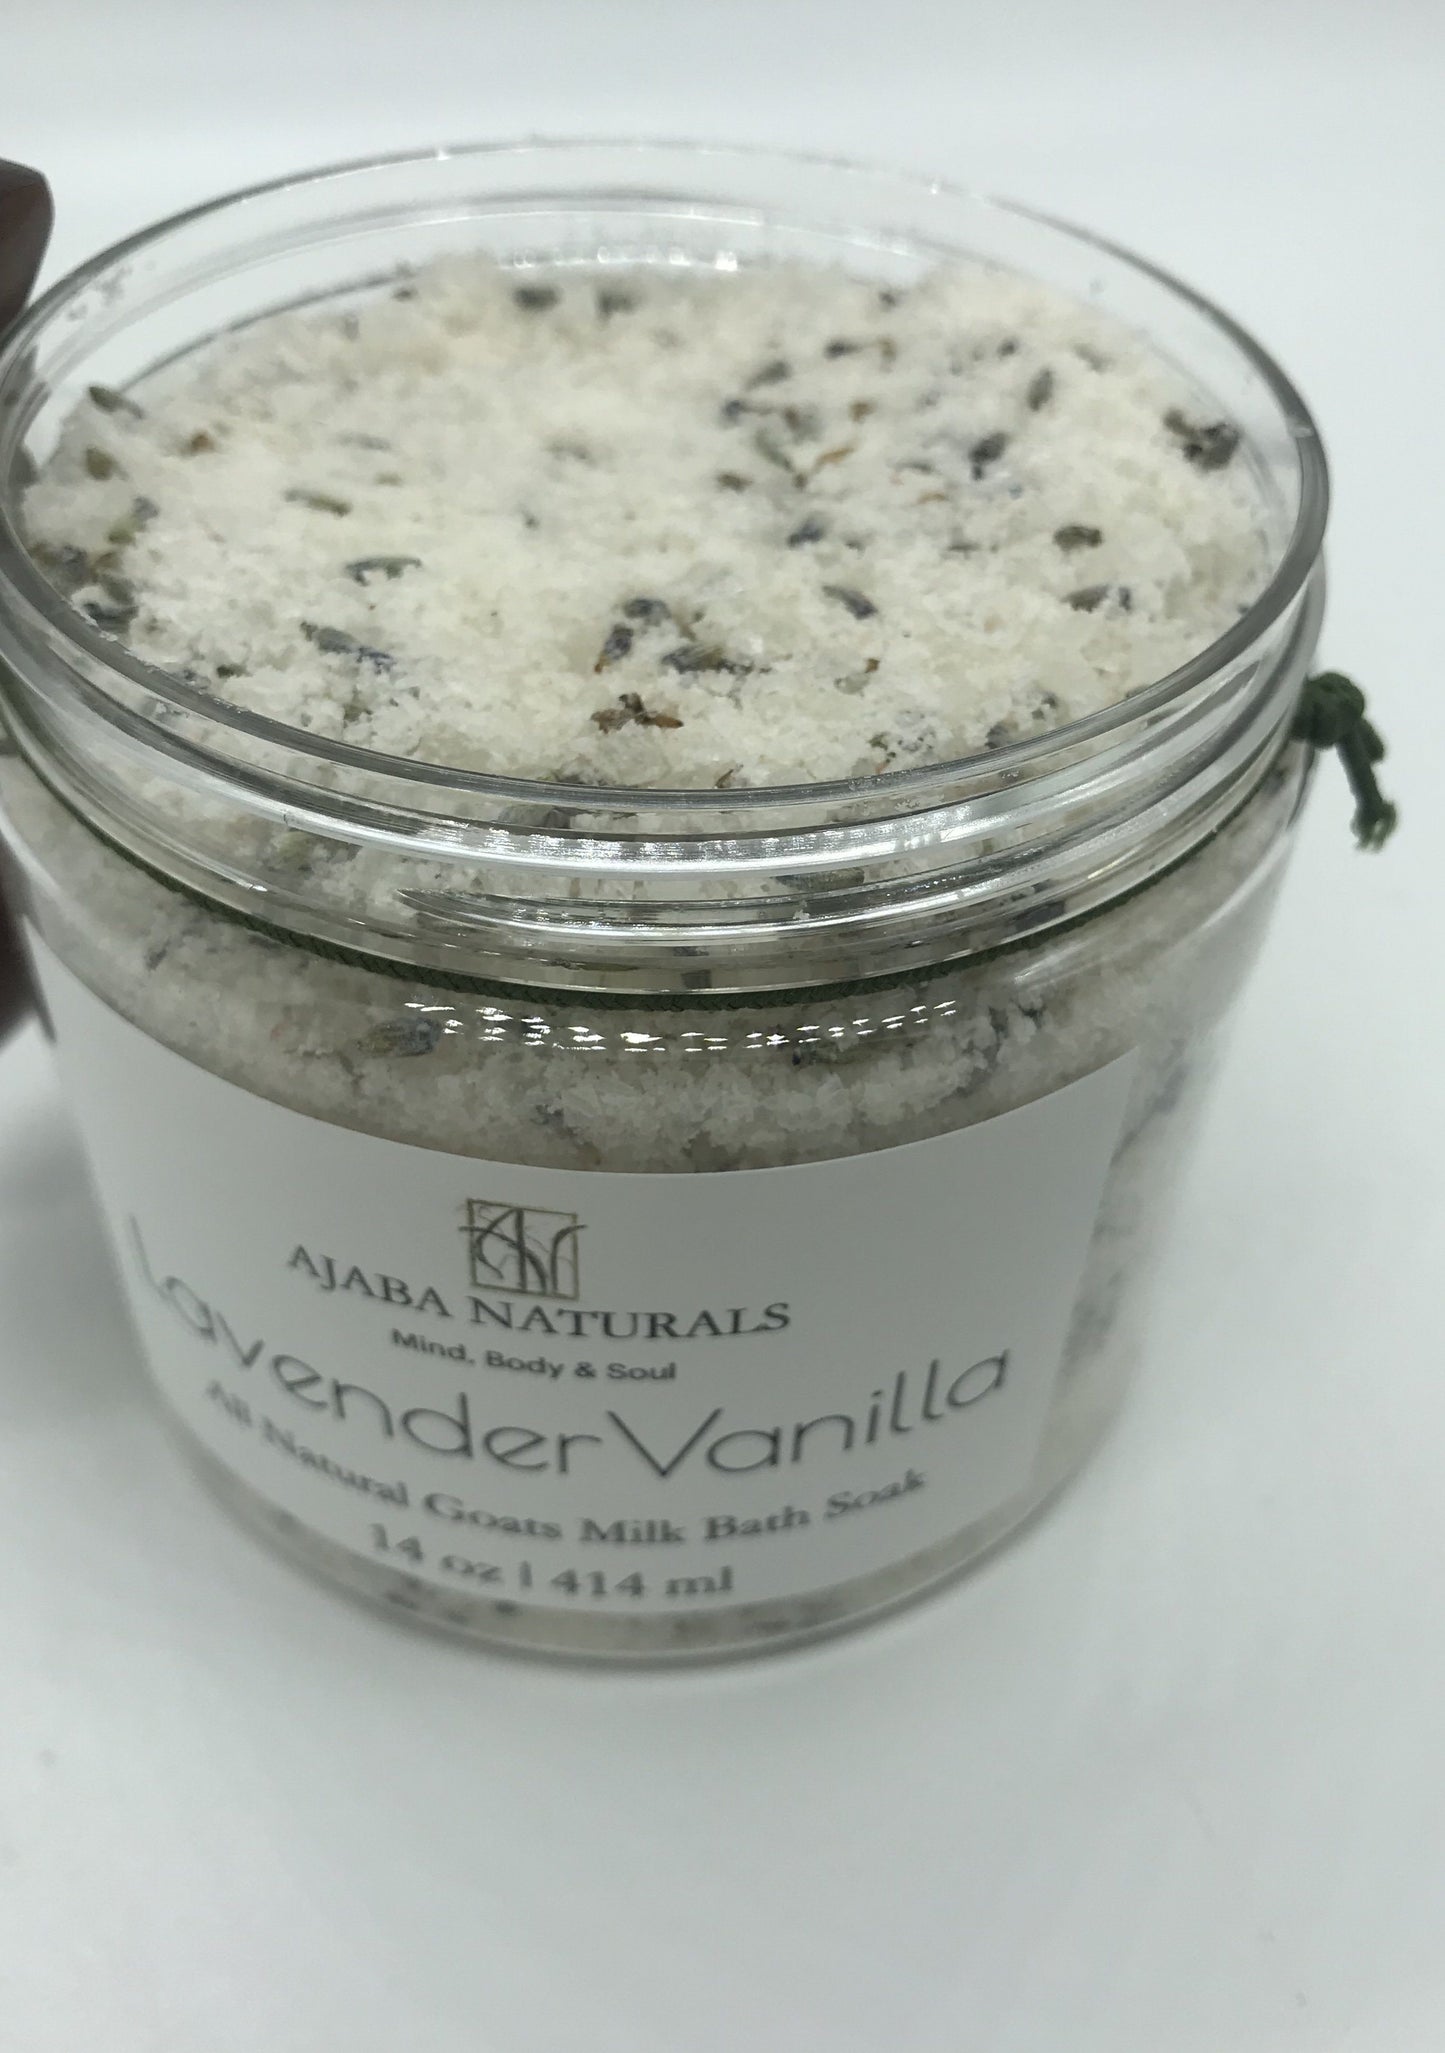 Lavender Vanilla Goat Milk Bath Soak Bath Soak AJABA NATURALS 